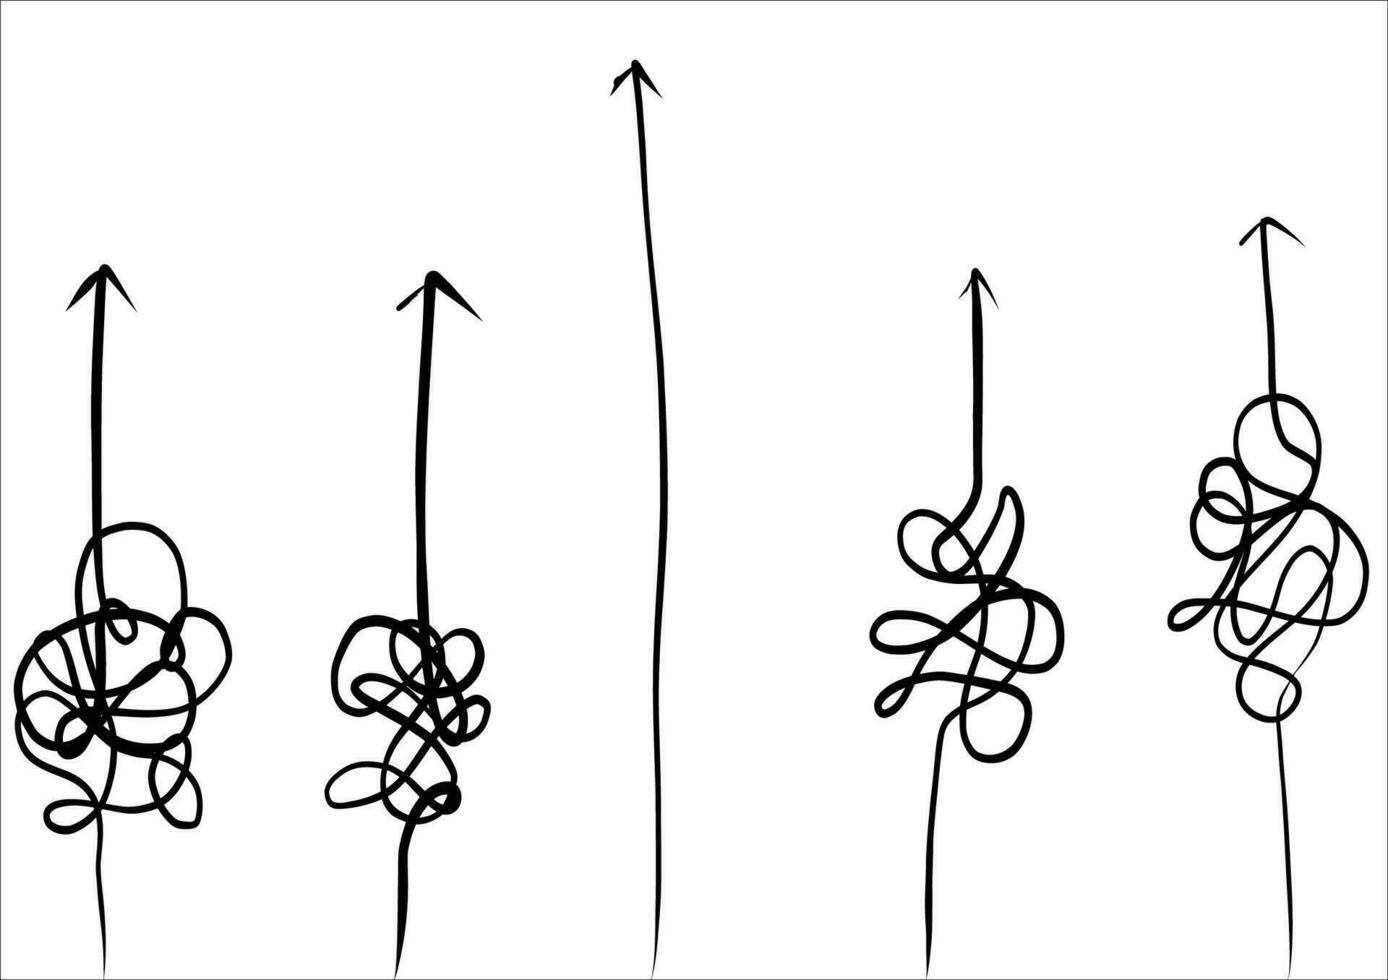 abstrakt och lätt enkel linje från Start till slutet vektor illustration set.kontinuerlig ett linje teckning.